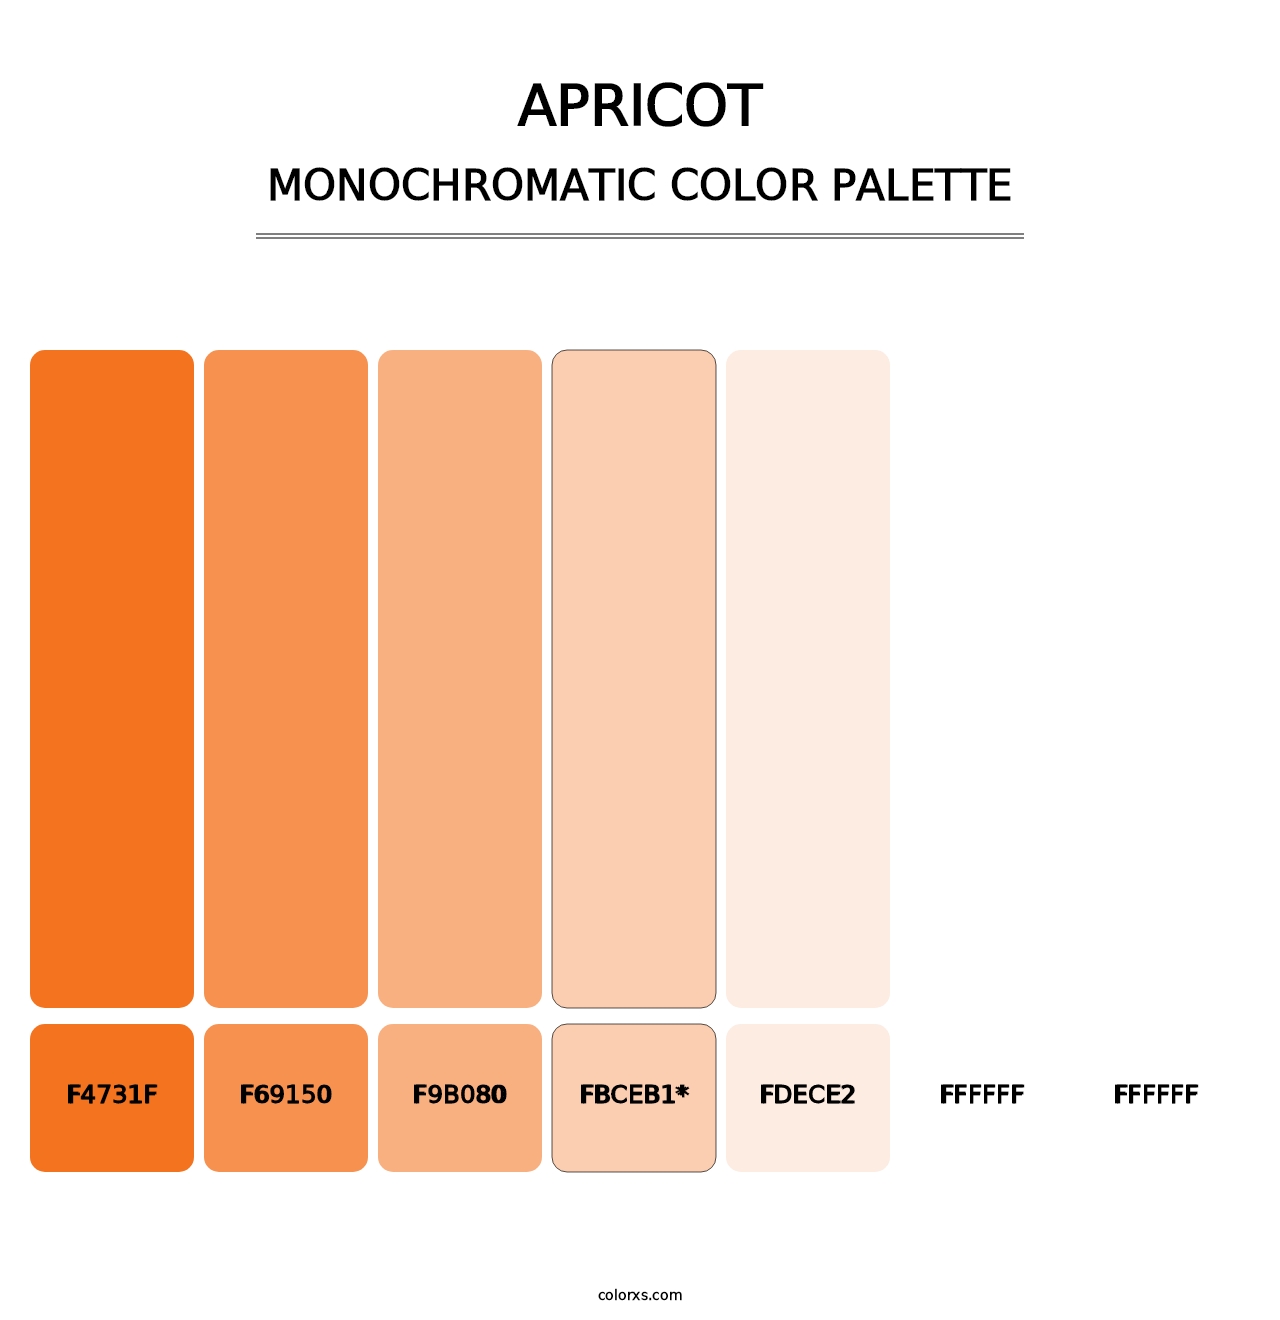 Apricot - Monochromatic Color Palette